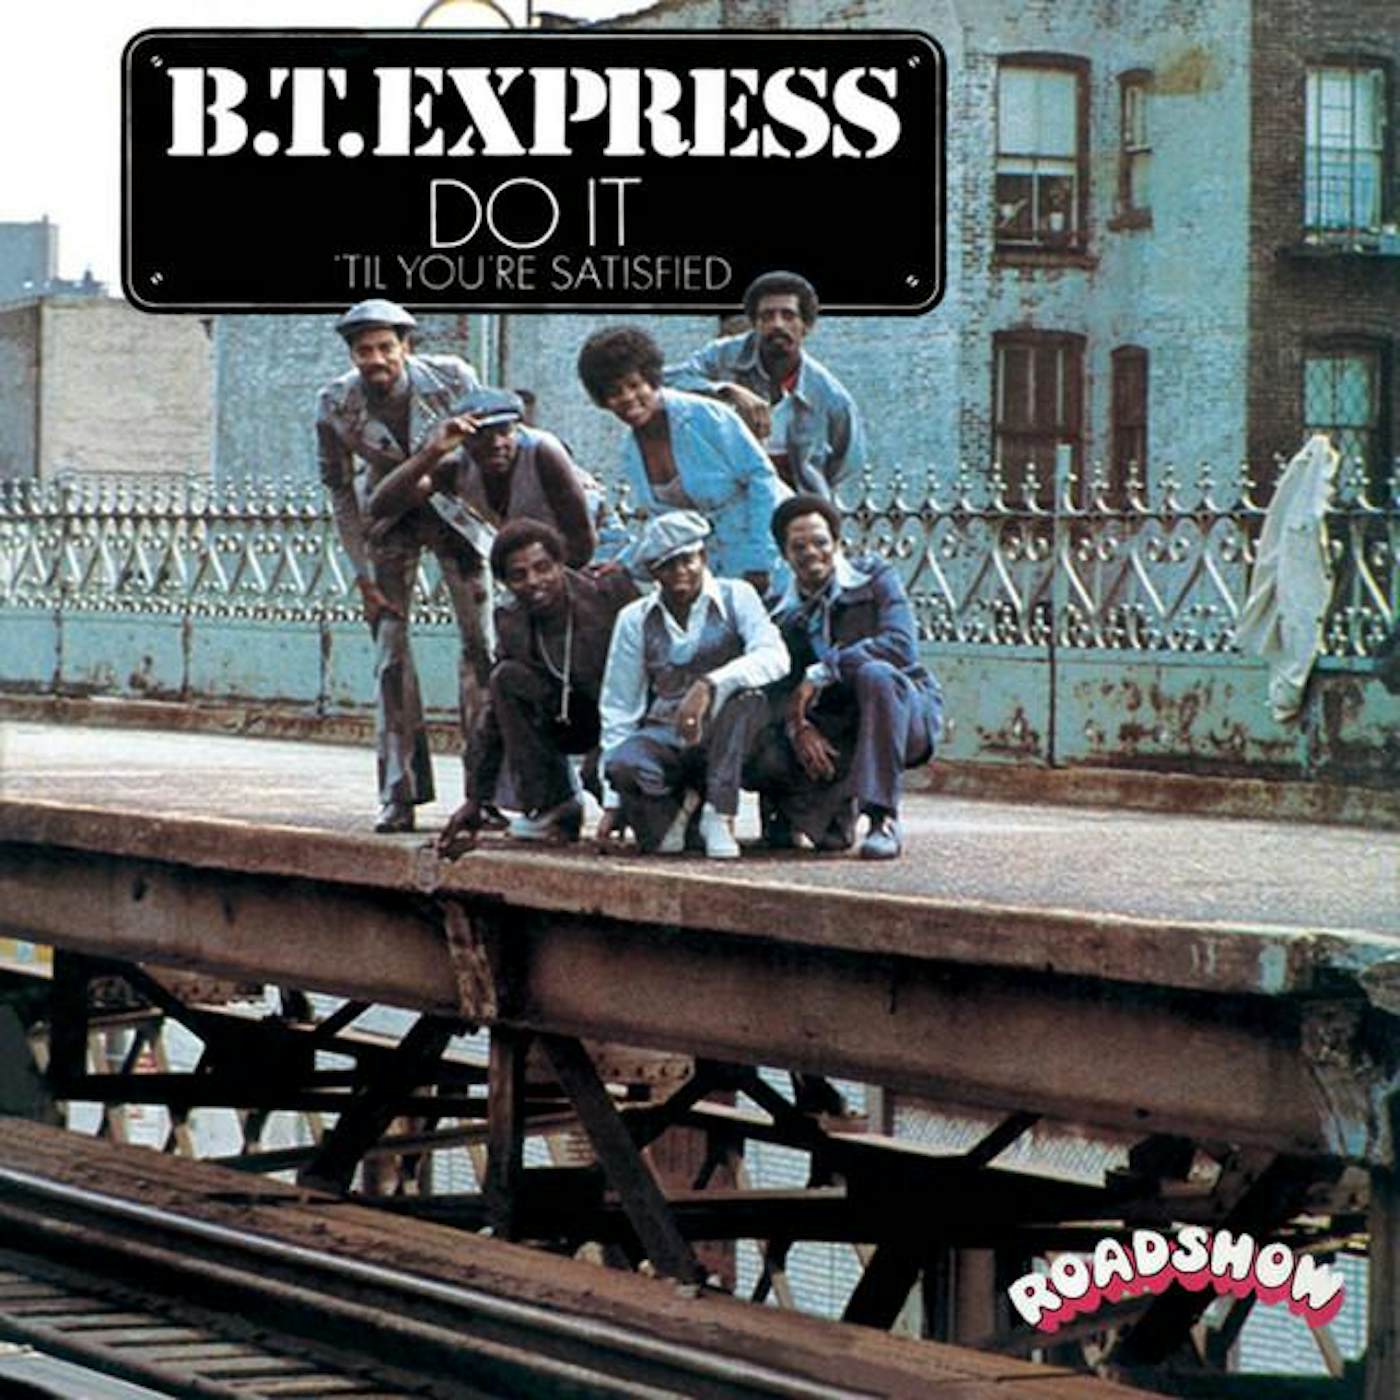 Bt Express